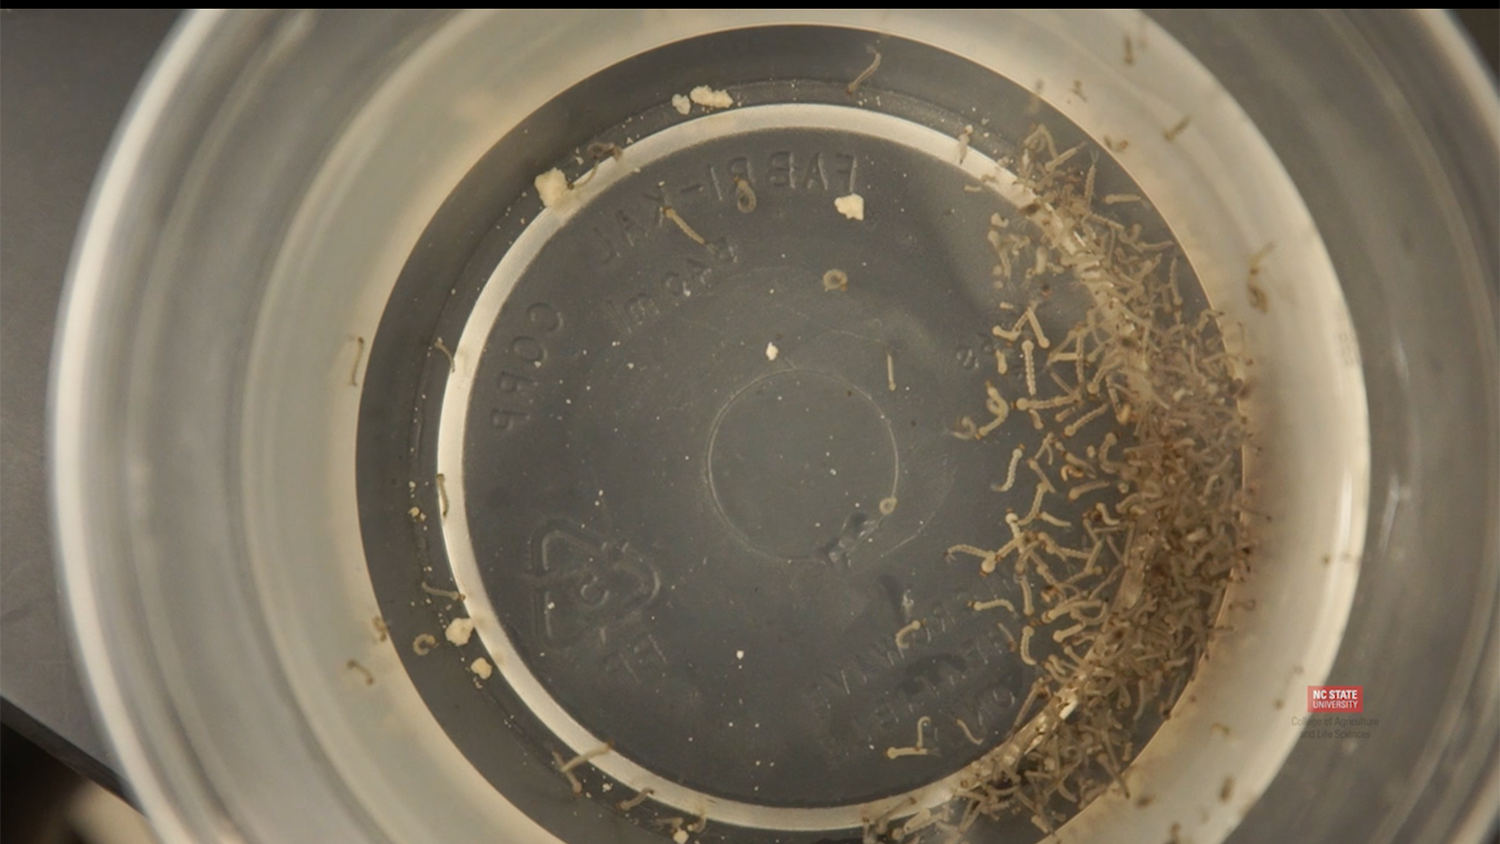 Mosquito larvae sample